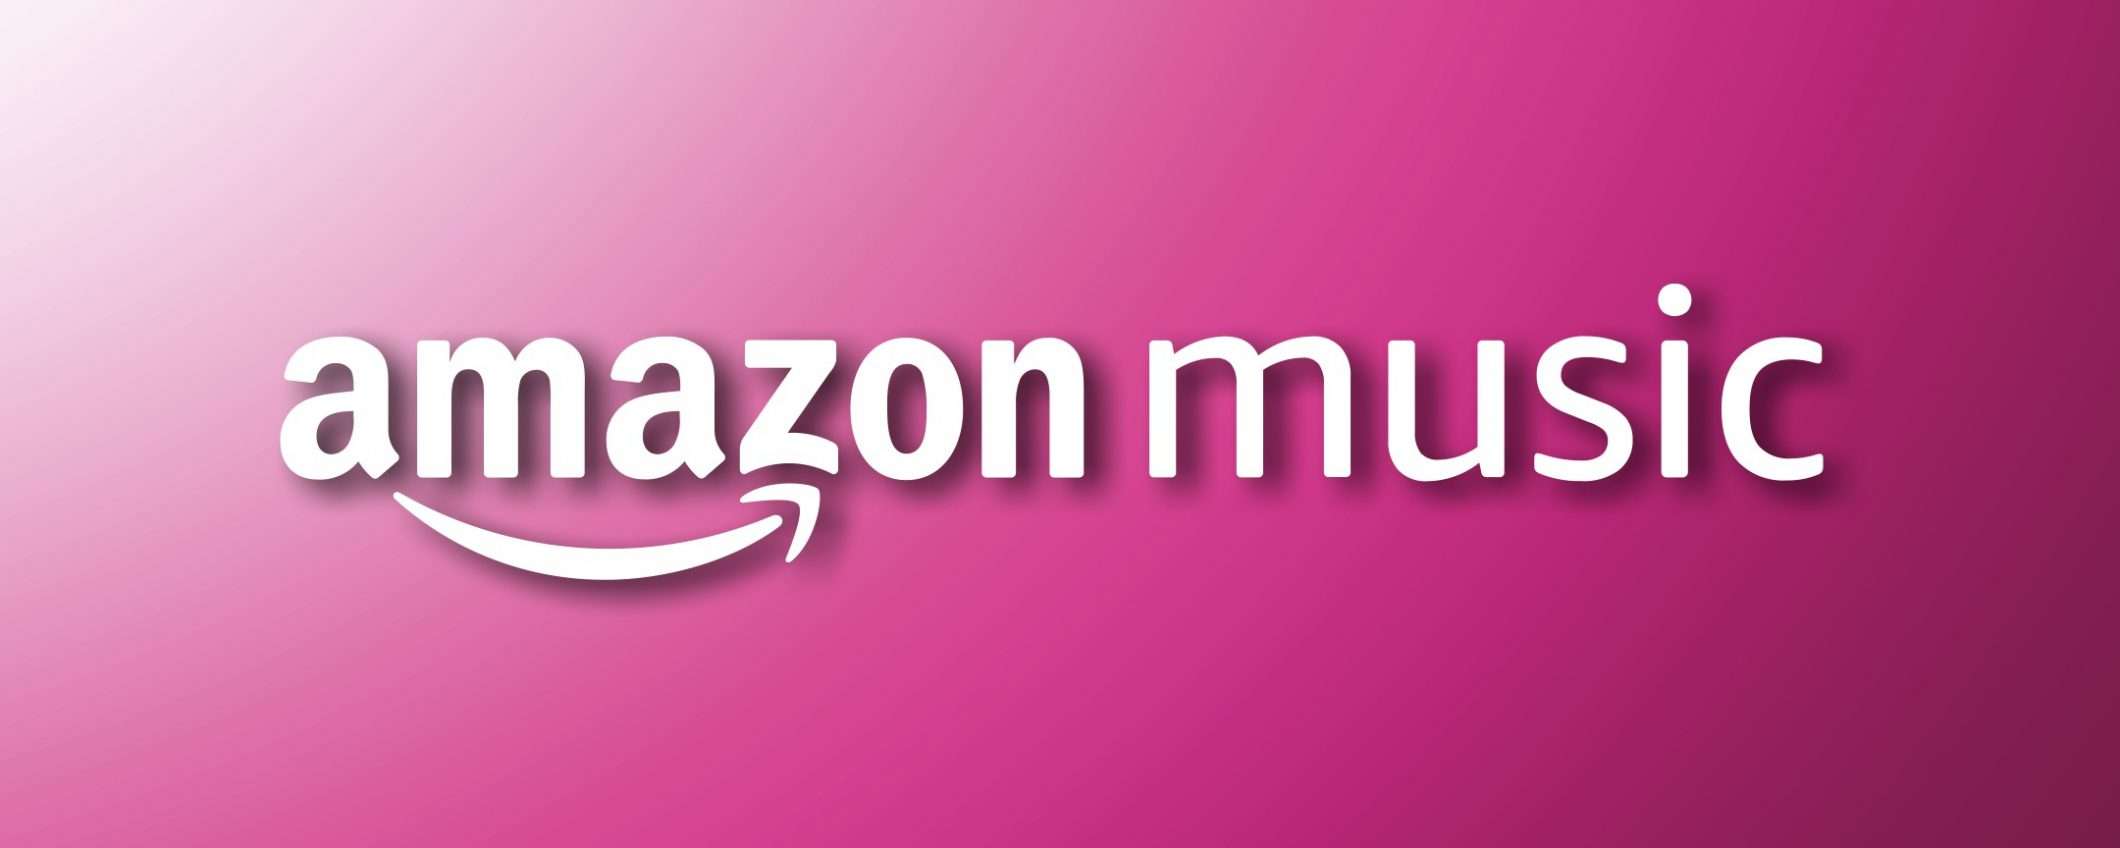 Amazon Music: le novità con Prime non piacciono